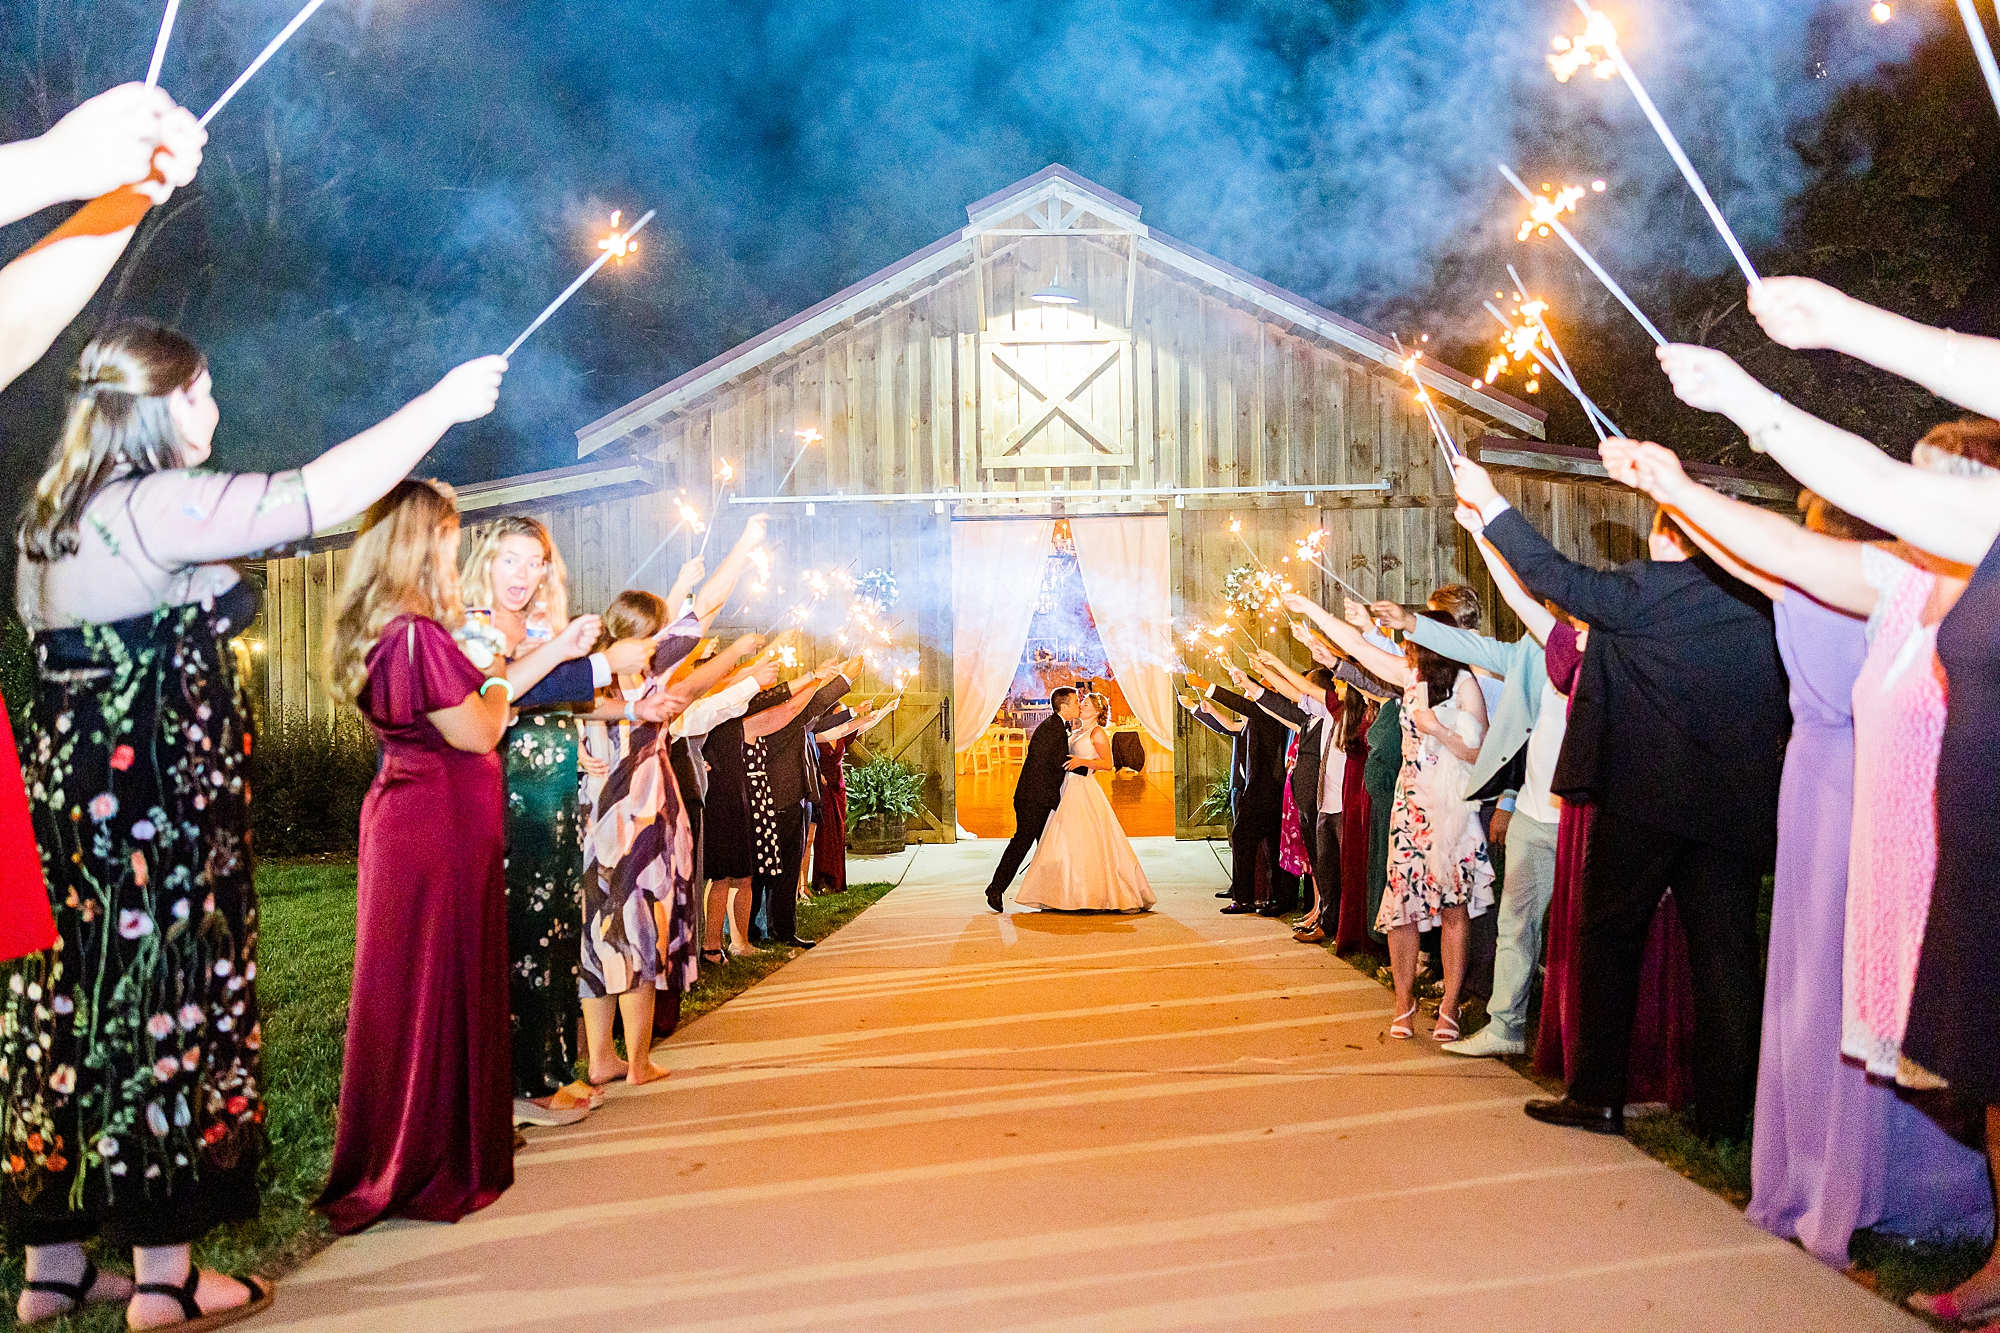 sparkler exit at end of wedding reception